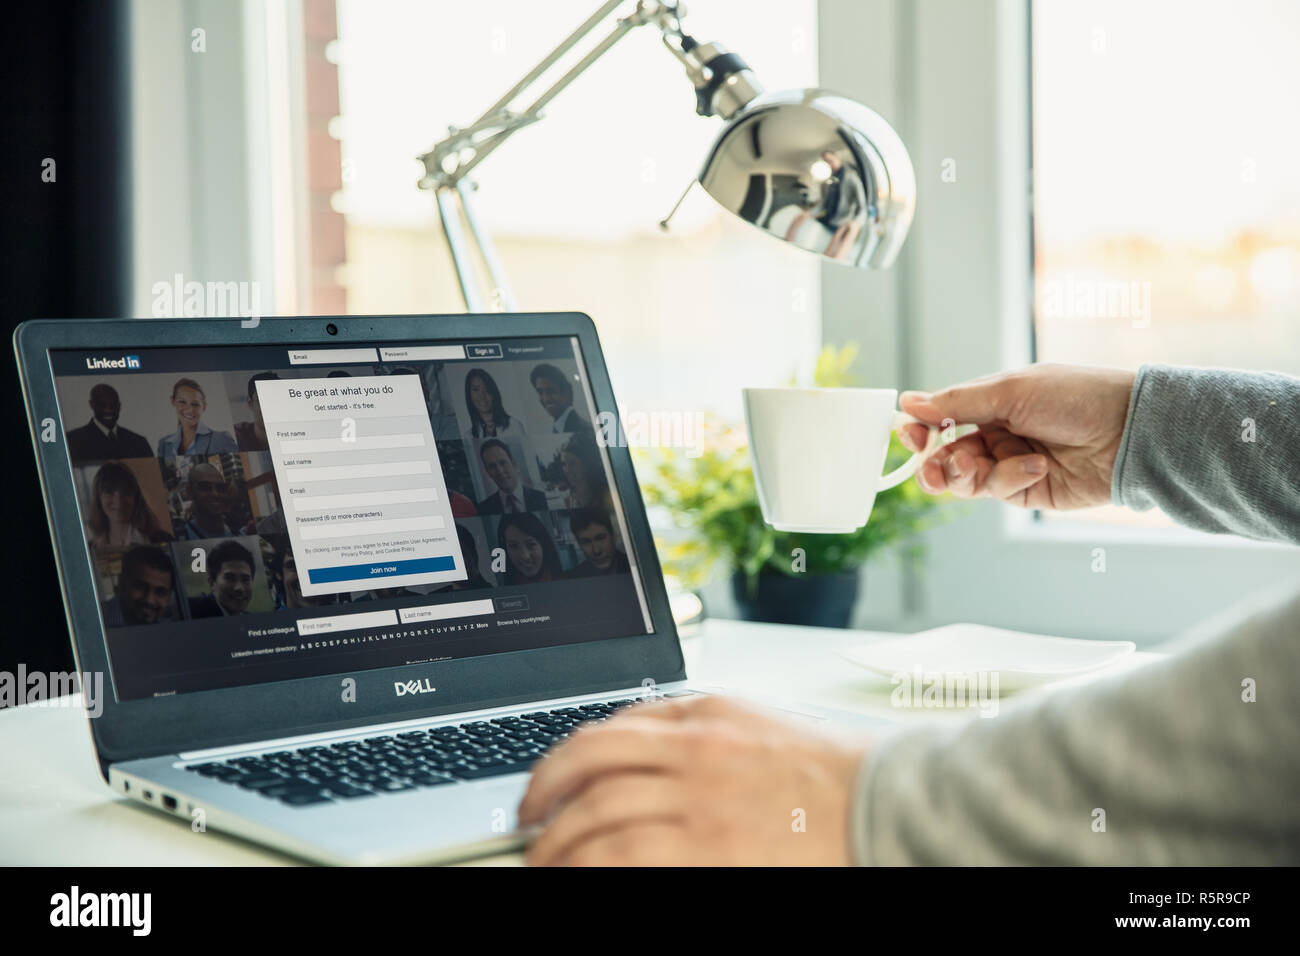 WROCLAW, Polen - 29. NOVEMBER 2018: Moderne Laptop auf dem Schreibtisch im Büro mit Linkedin Webseite auf dem Bildschirm. LinkedIn ist ein Unternehmen und Beschäftigung - Stockfoto